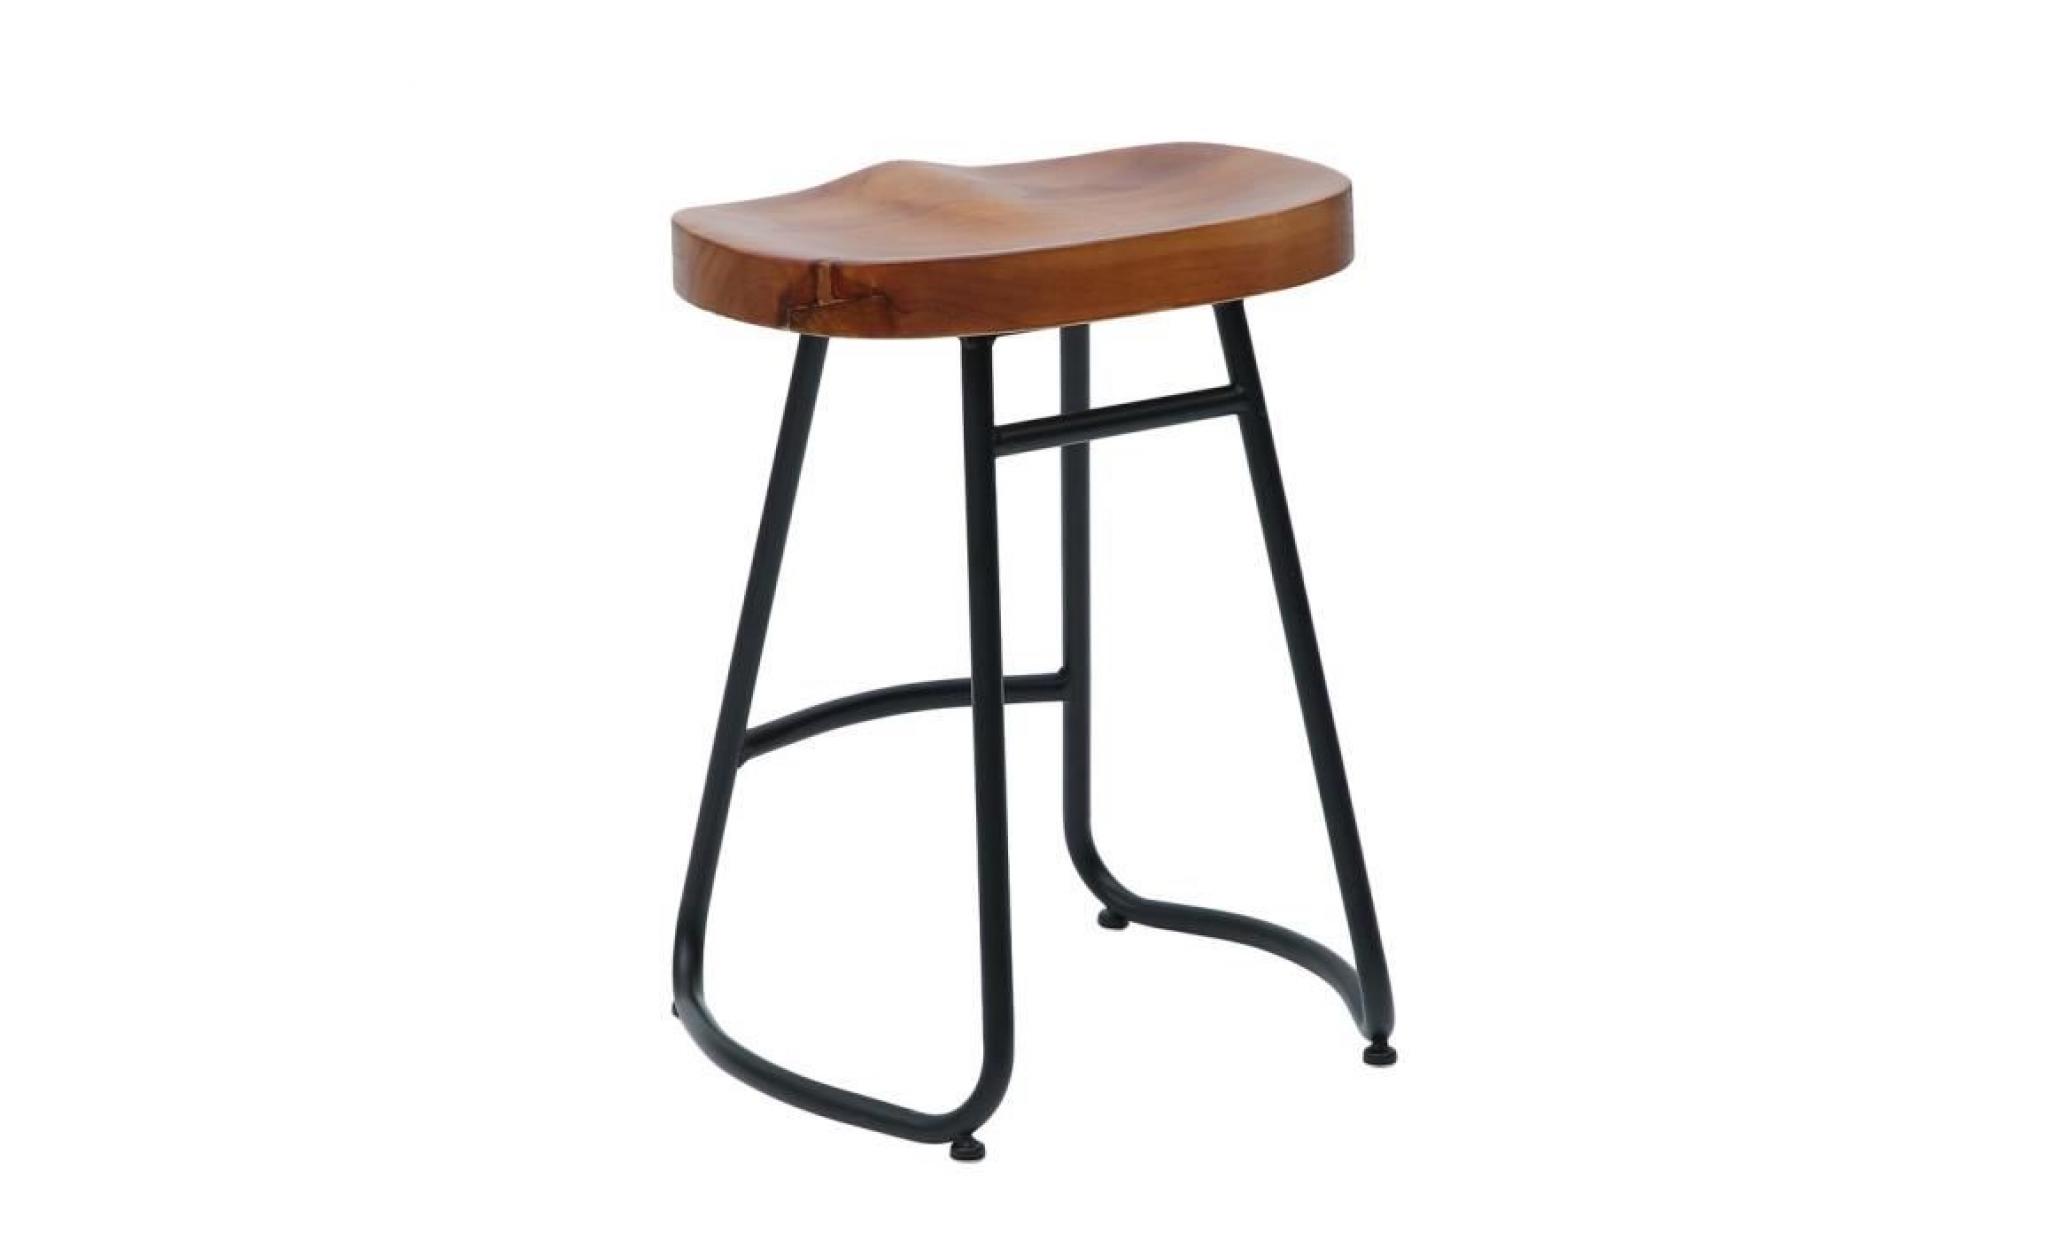 1pc 55cm chaise tabouret en bois chaise de bar pub classique design vintage rustique industriel pas cher